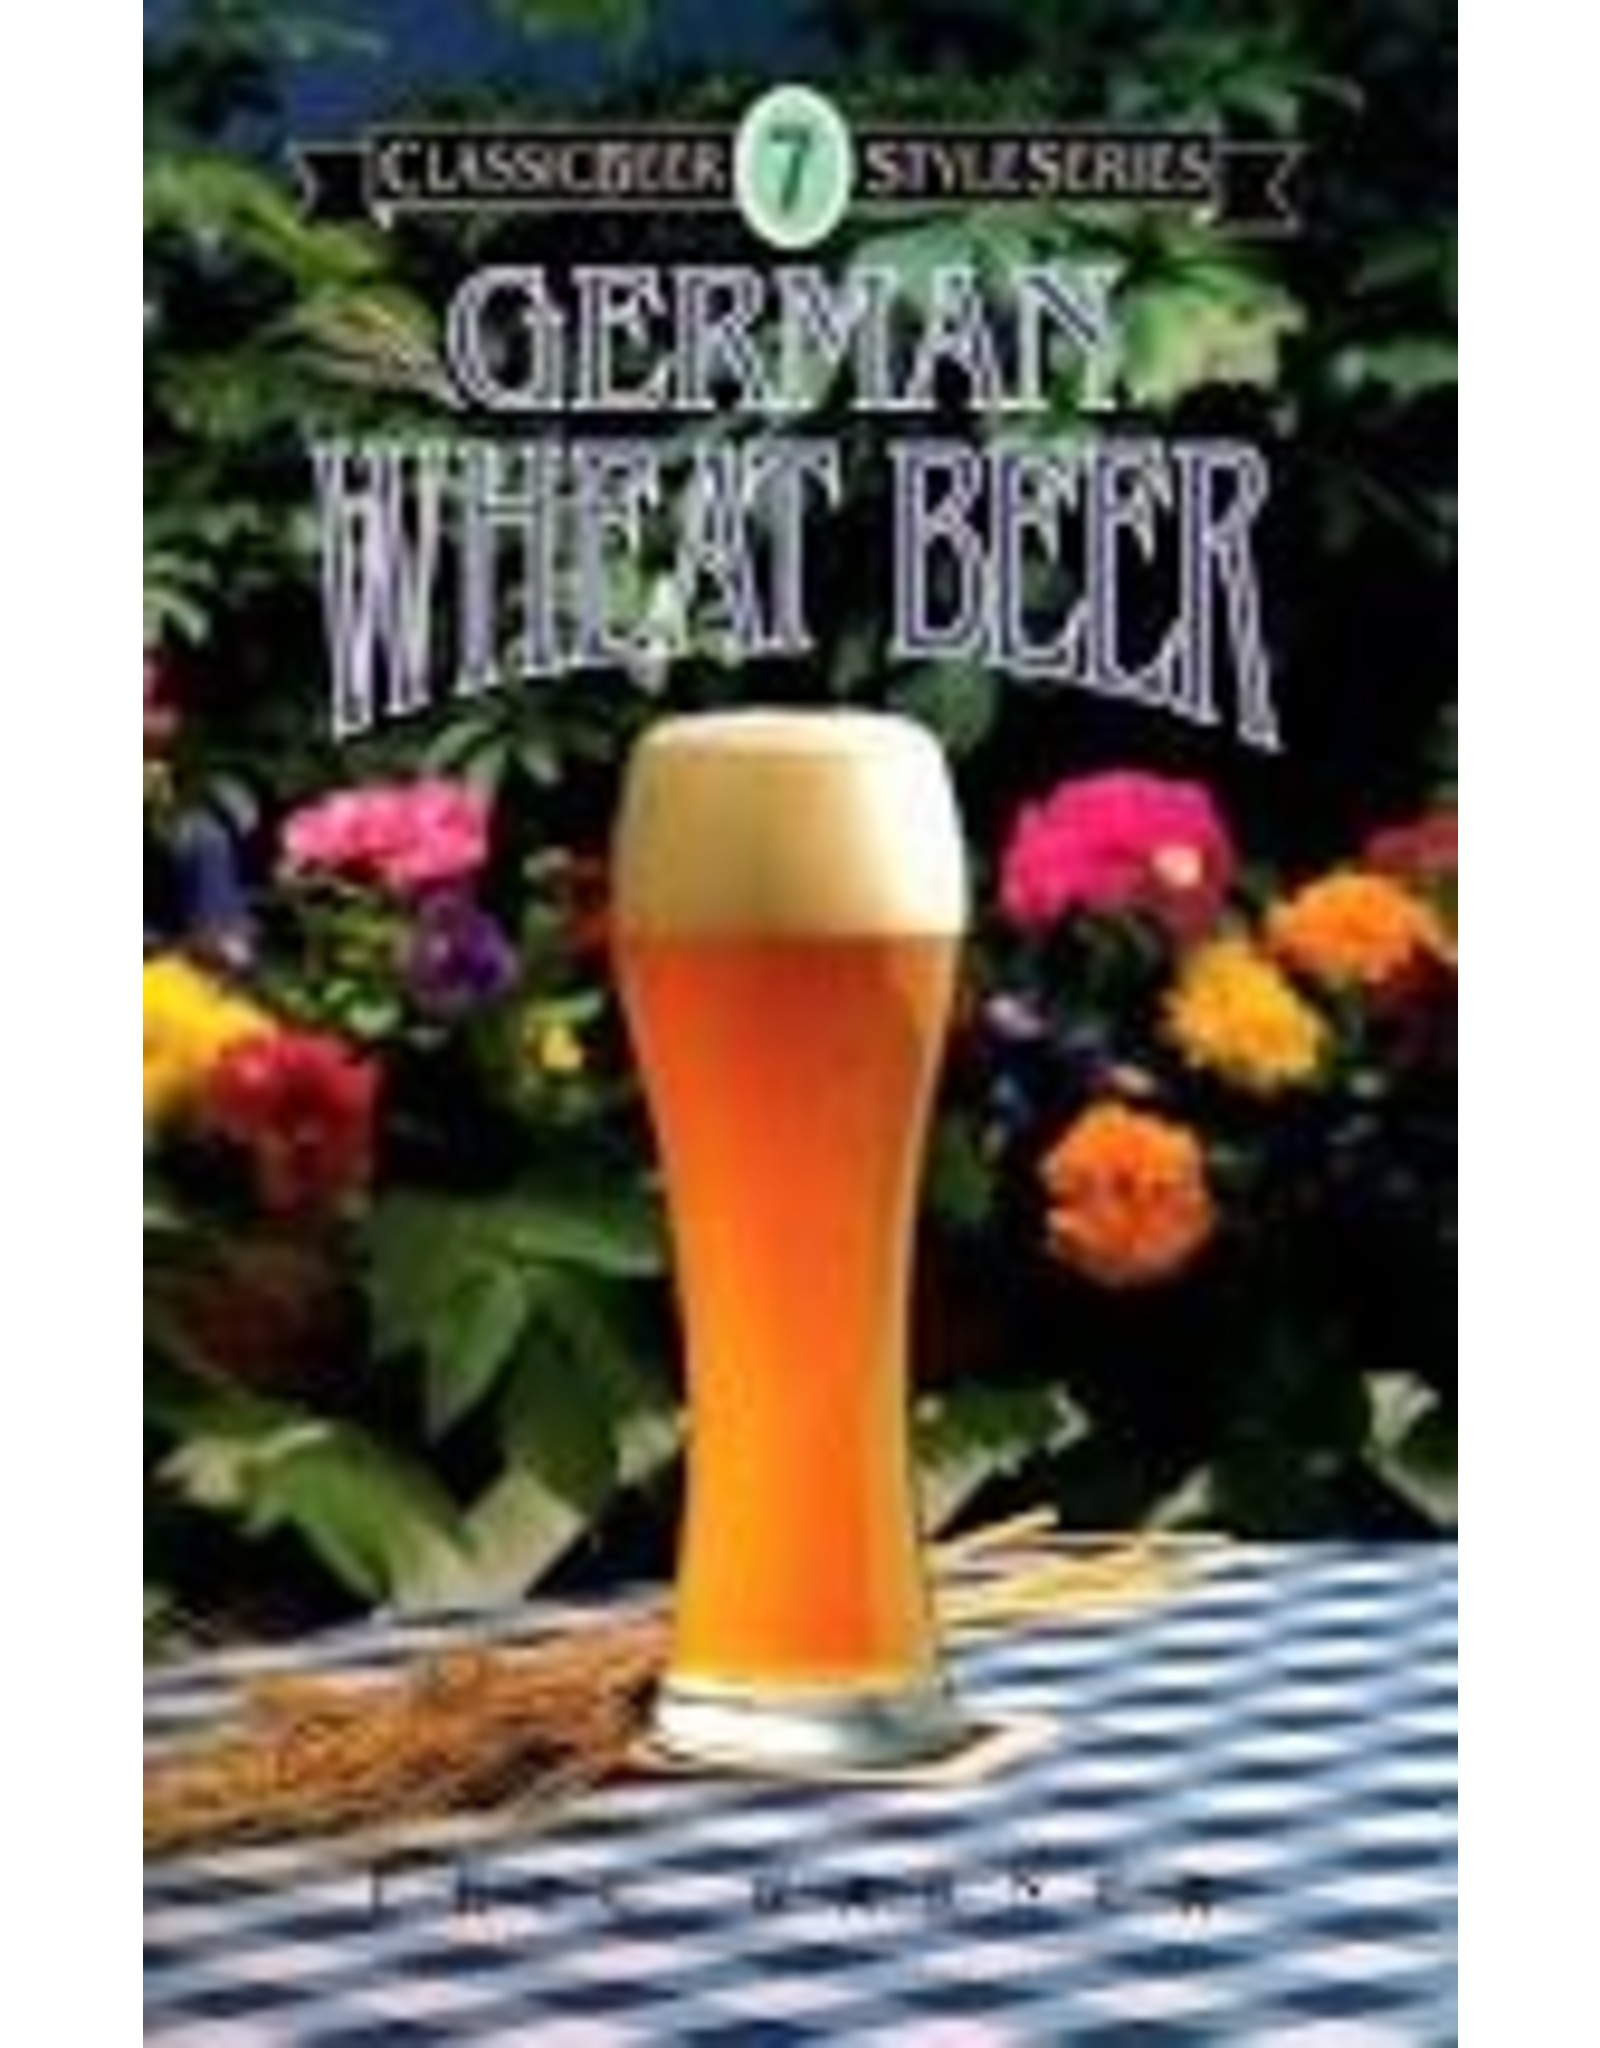 German Wheat Beer; Classic Beer Styles Series #7  (book)